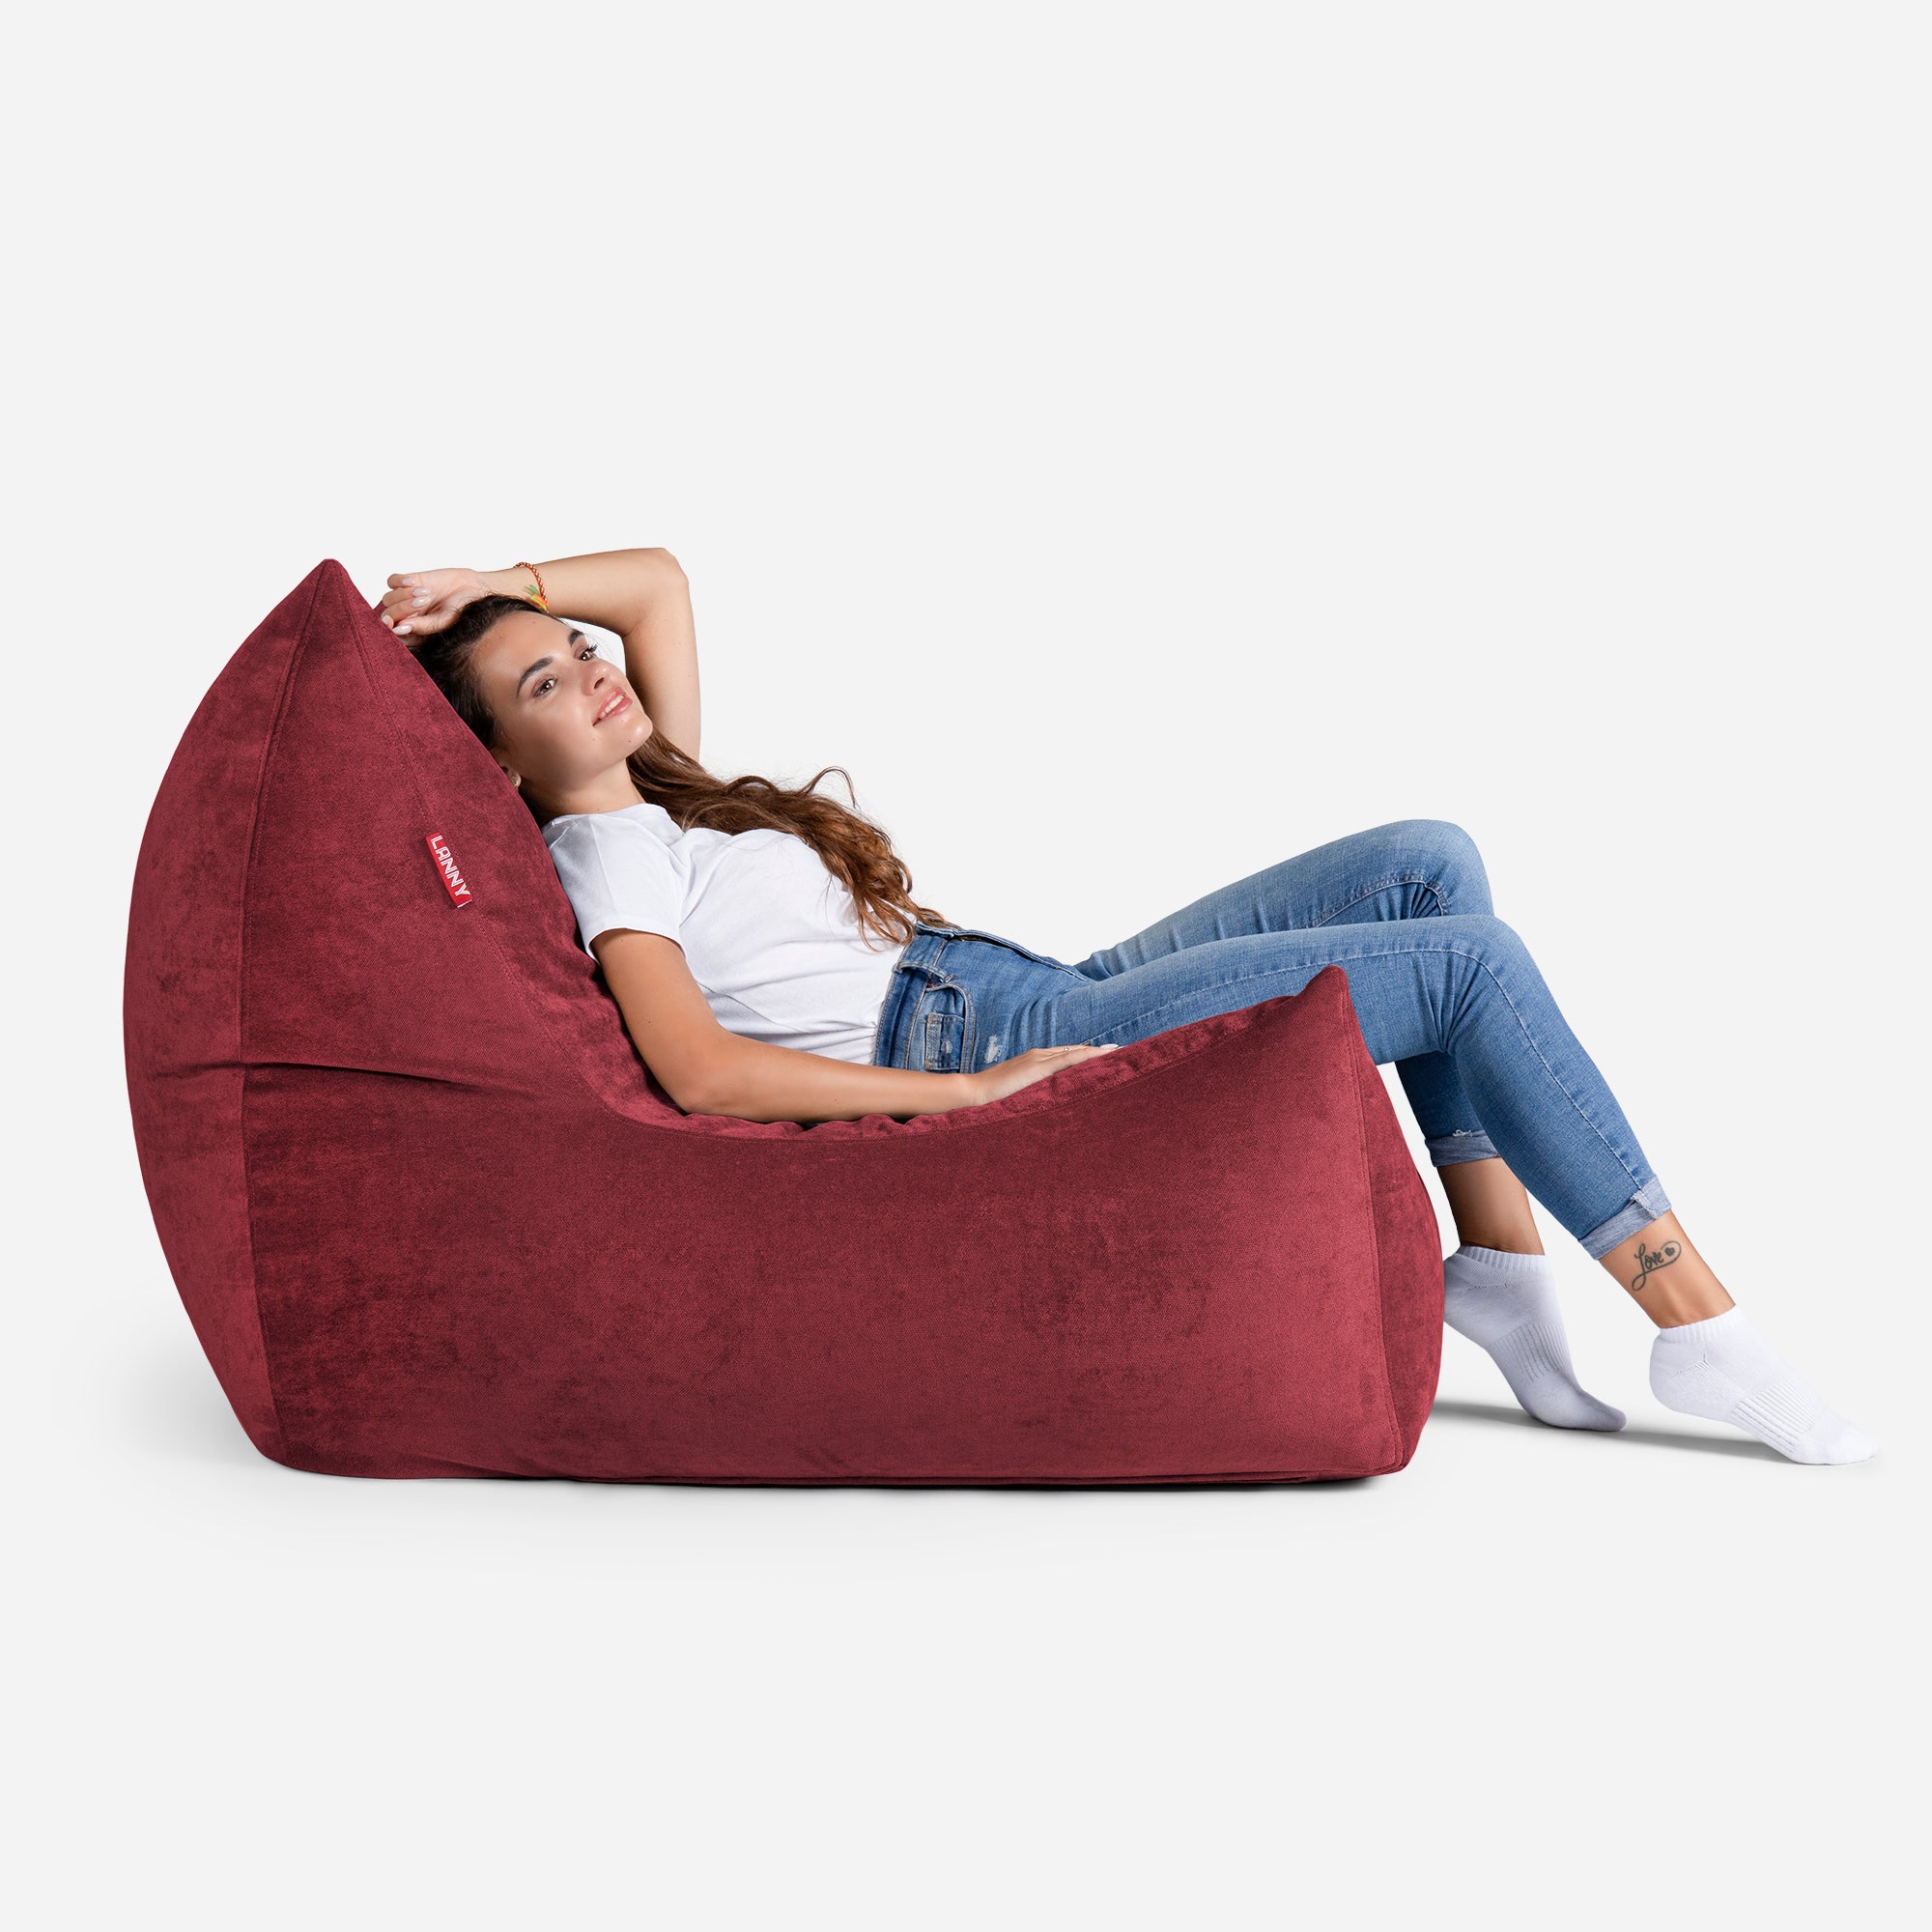 Quadro Aldo Red Bean bag Chair